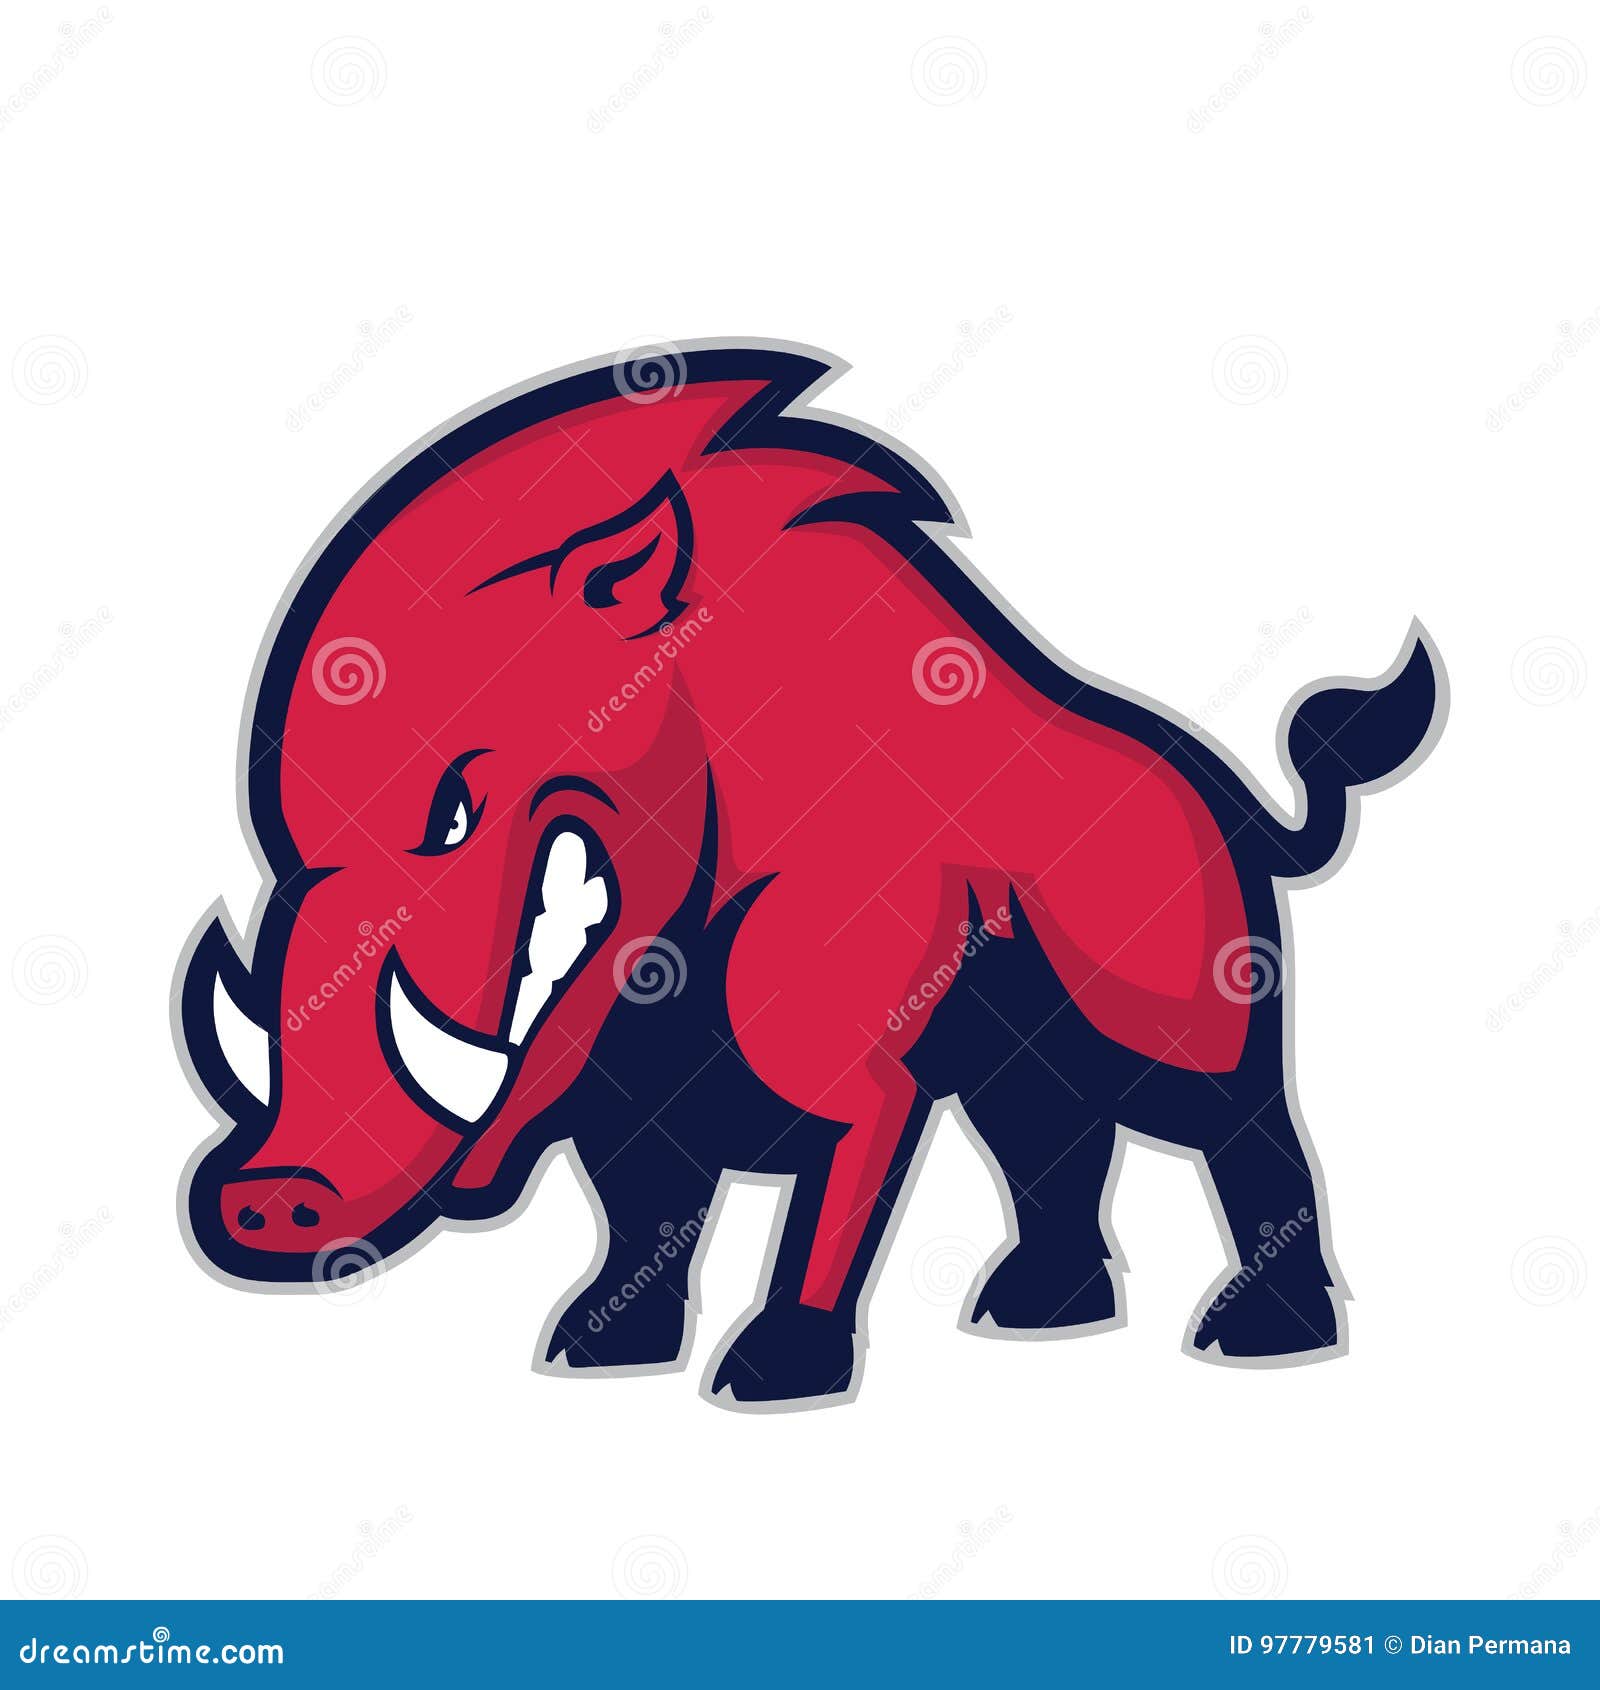 wild hog or boar mascot